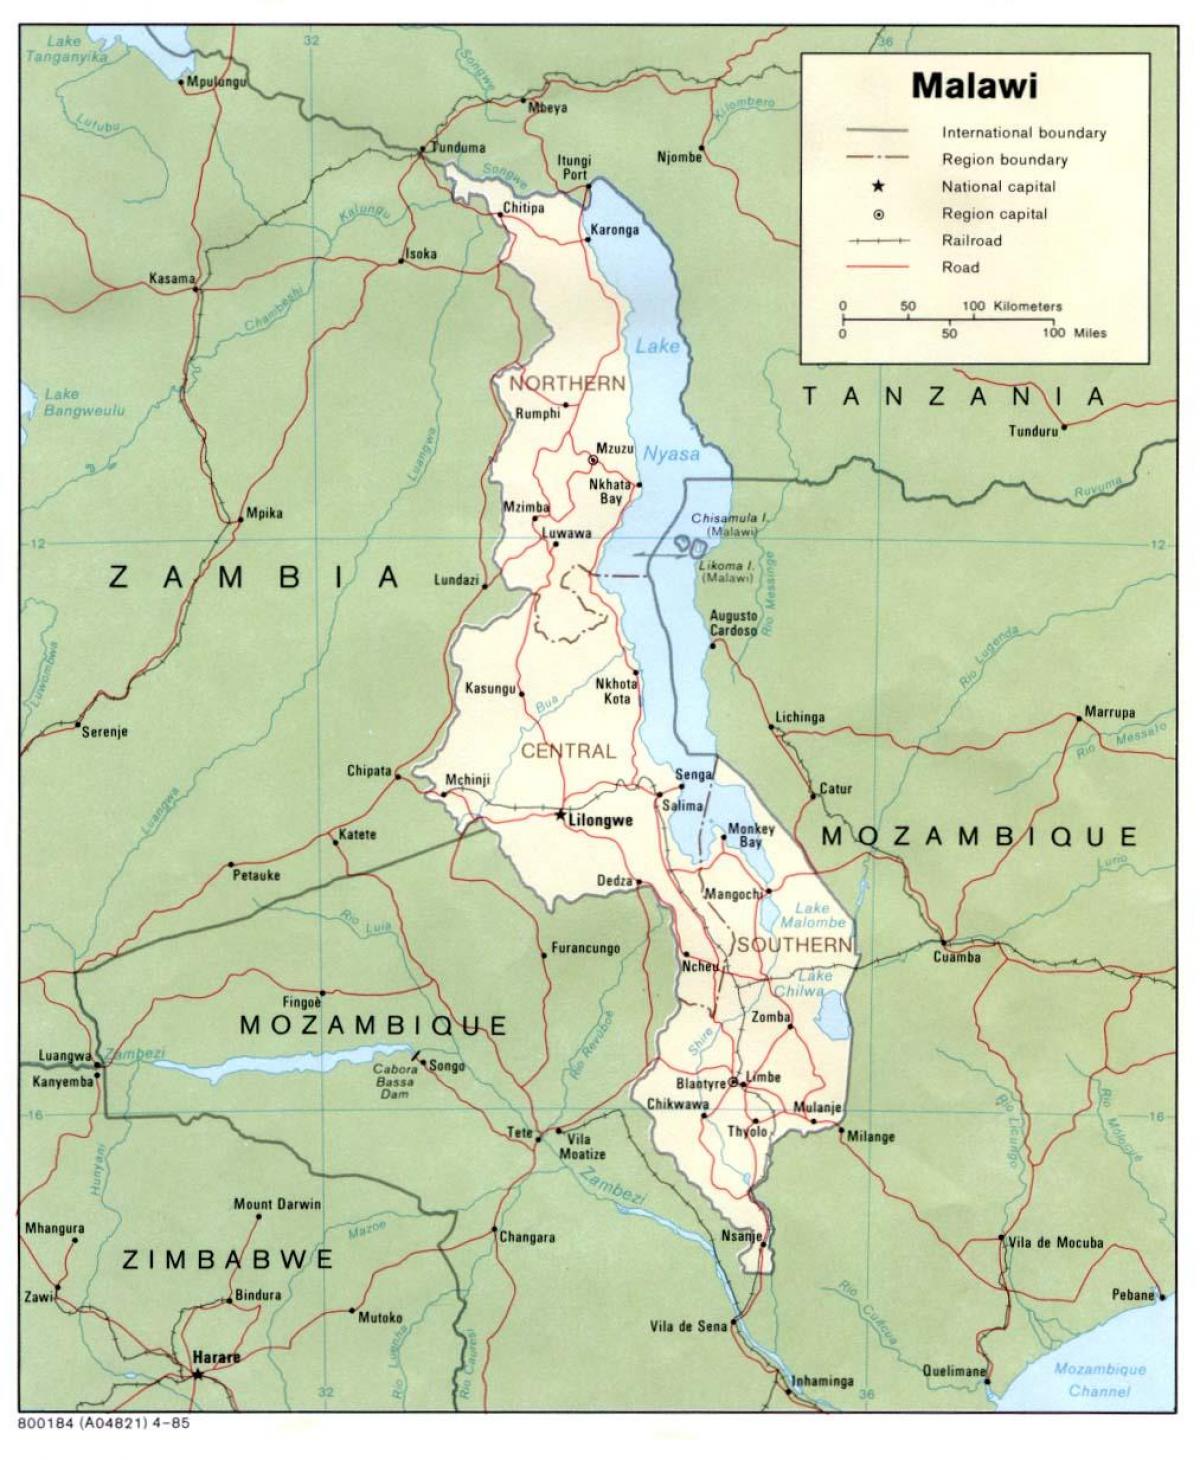 马拉维地图